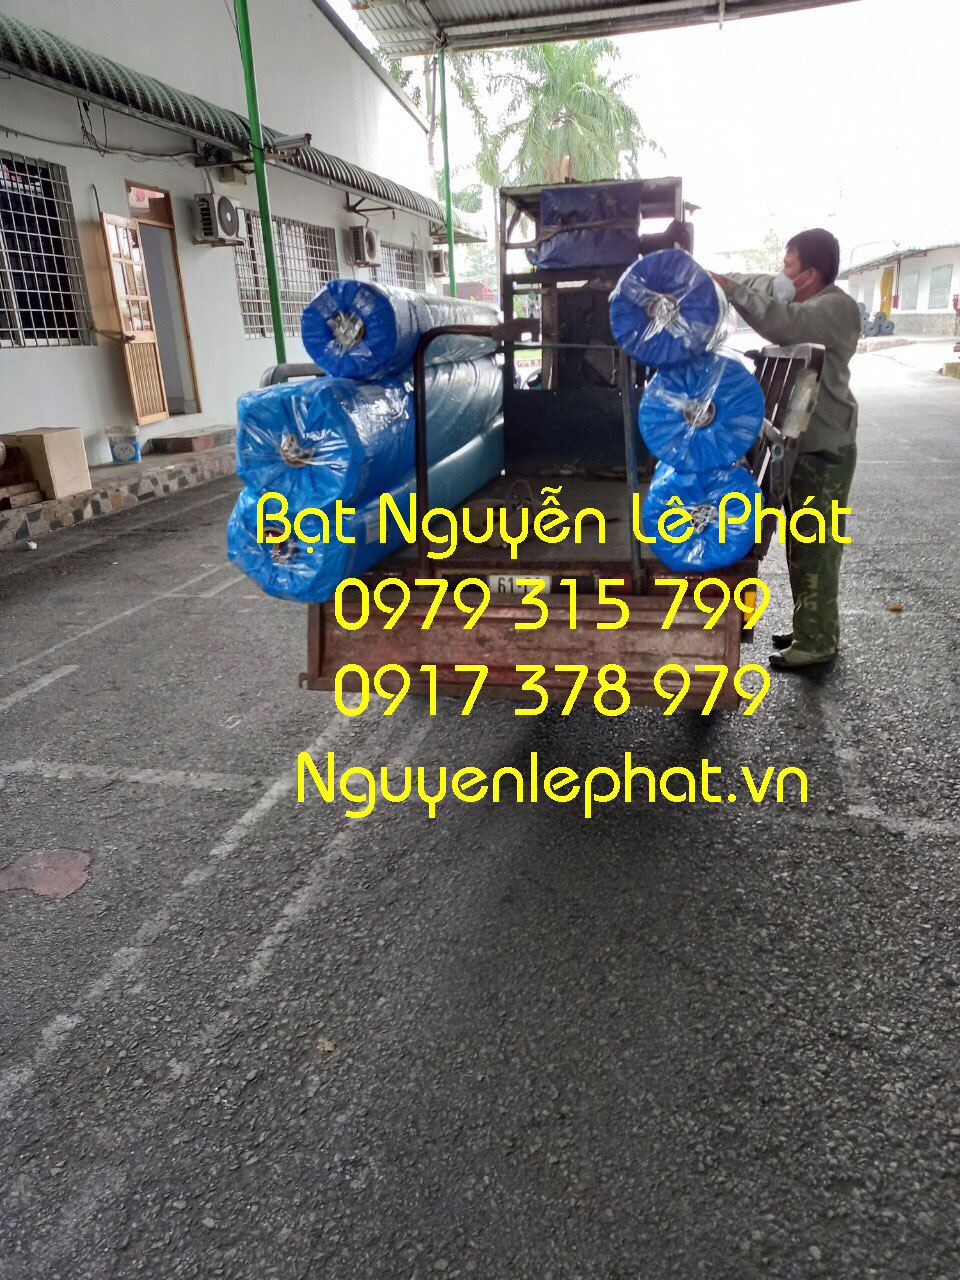 Báo giá bán bạt lót ao hồ chứa nước nuôi cá ở tại Xuân Lộc giá rẻ